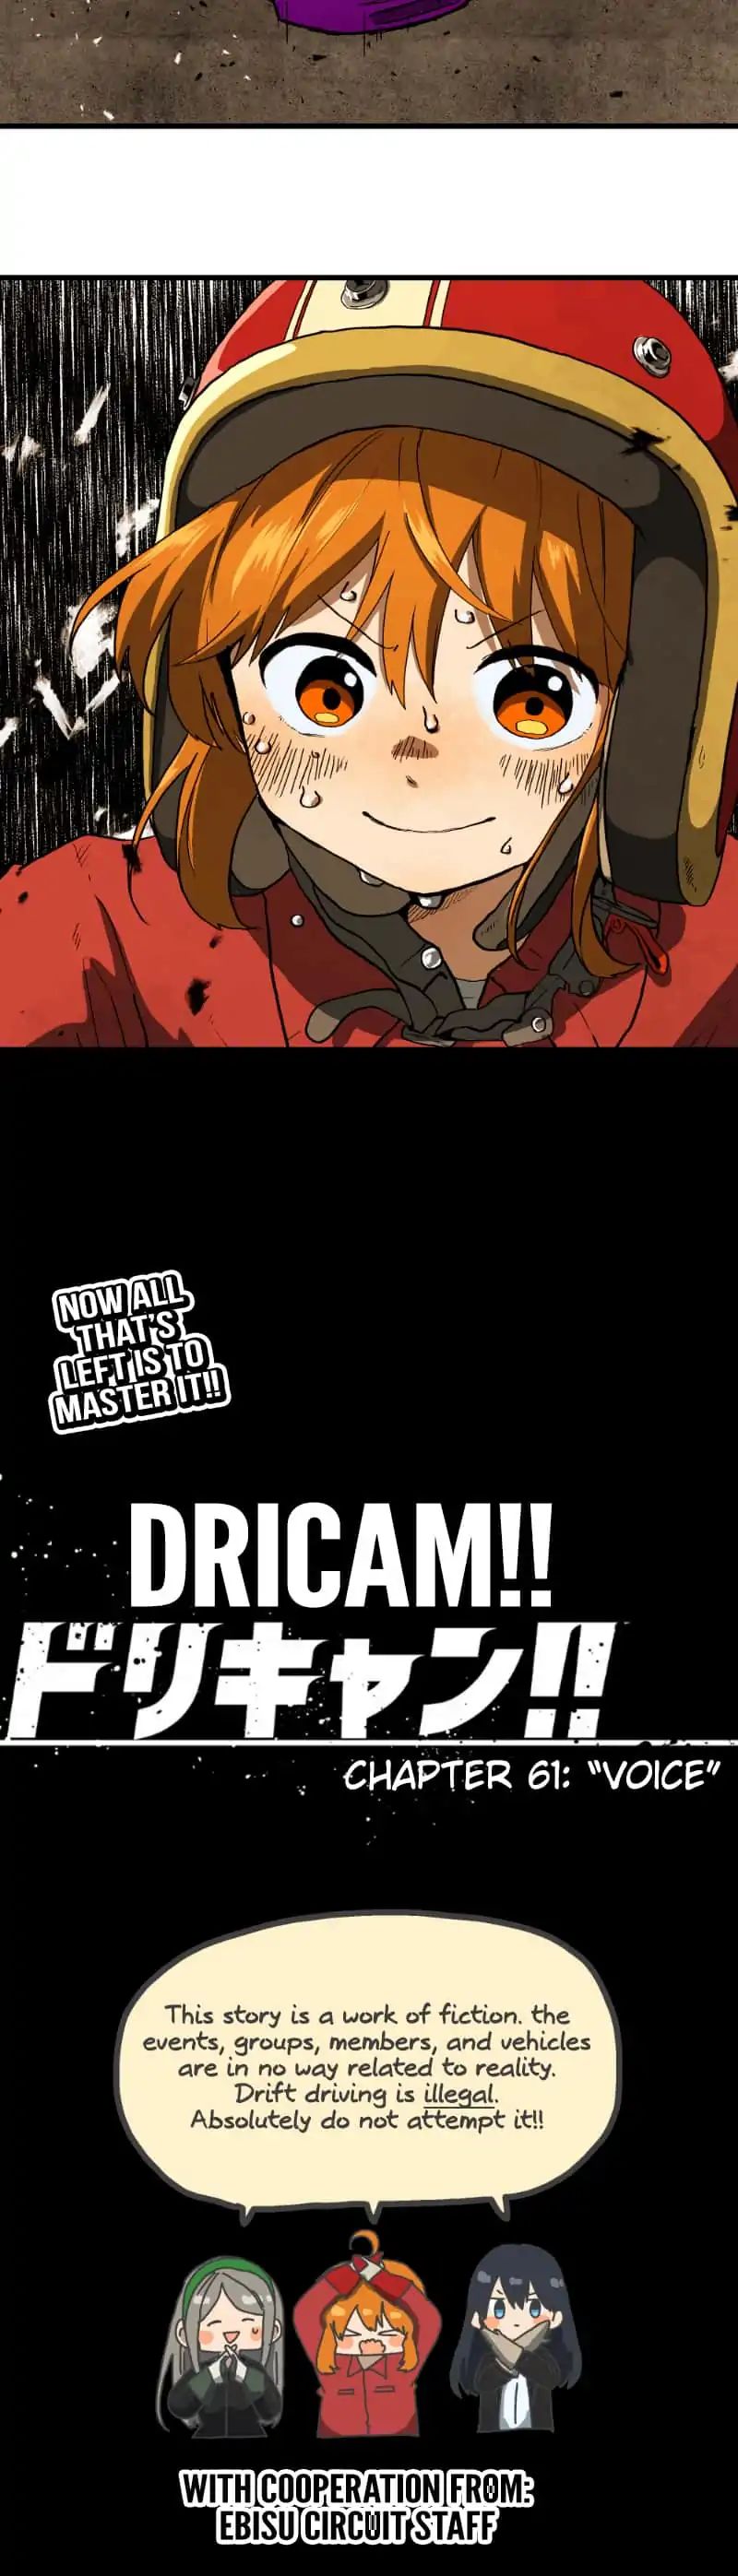 Dricam!! Chapter 61: Voice